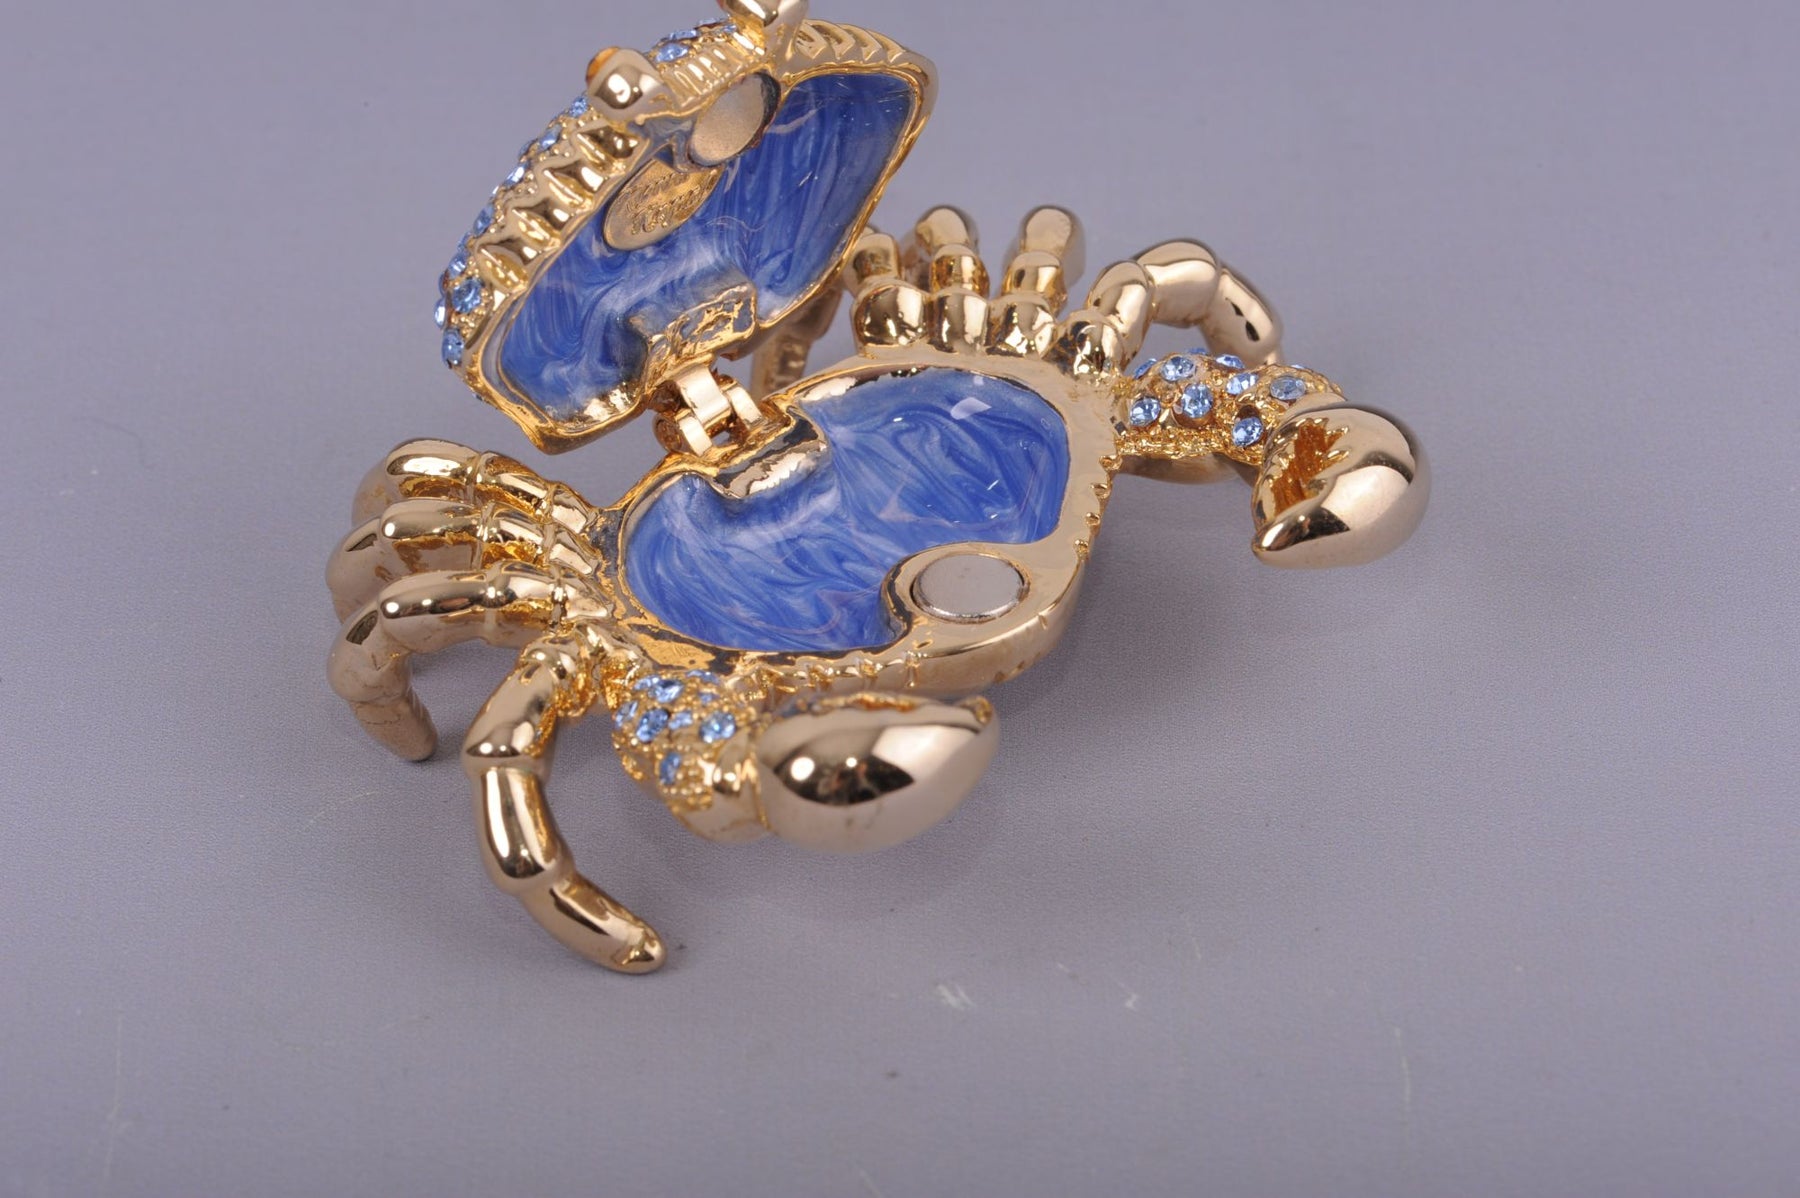 Crabe doré avec pierres bleues